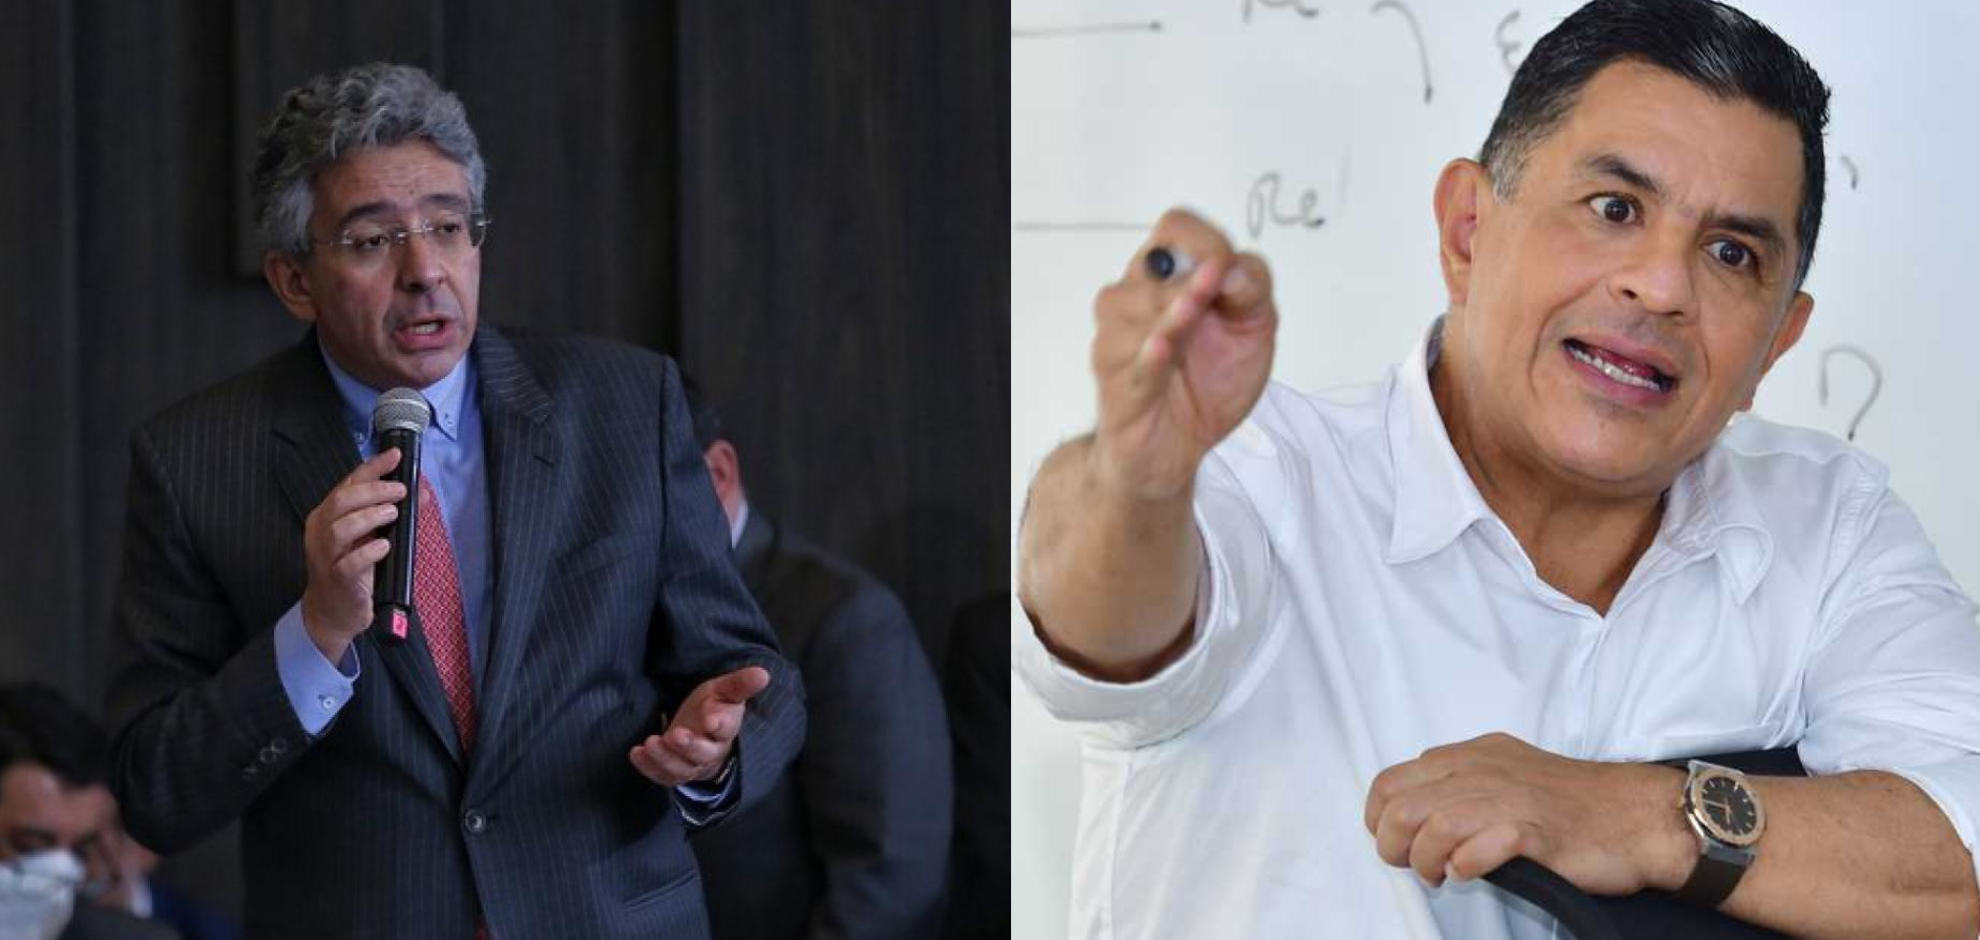 El excandidato presidencial y el Alcalde de Cali acordaron a través de Twitter un debate sobre el sistema de salud colombiano.